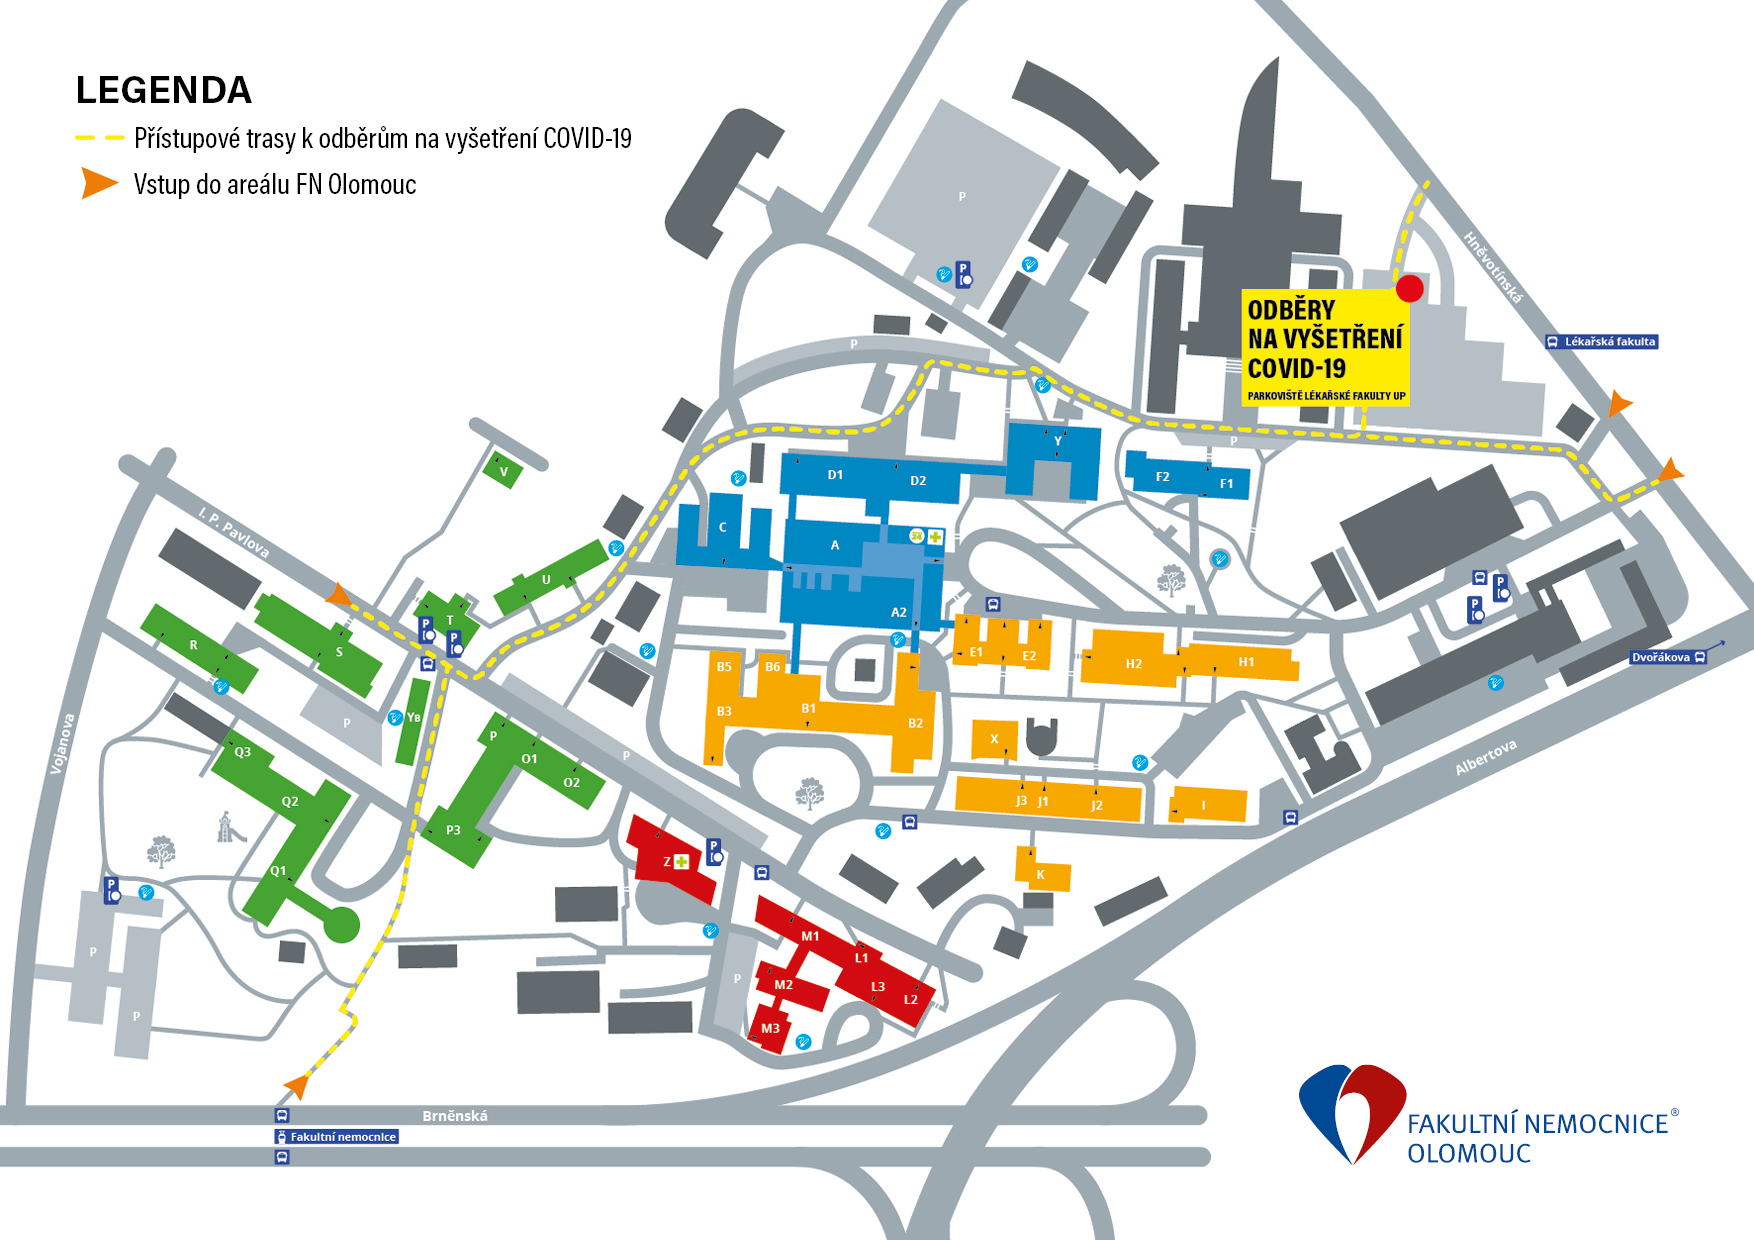 Fakultní nemocnice Olomouc otevírá od 21. 3. odběrové místo pro vyšetření COVID-19 - Fakultní nemocnice Olomouc